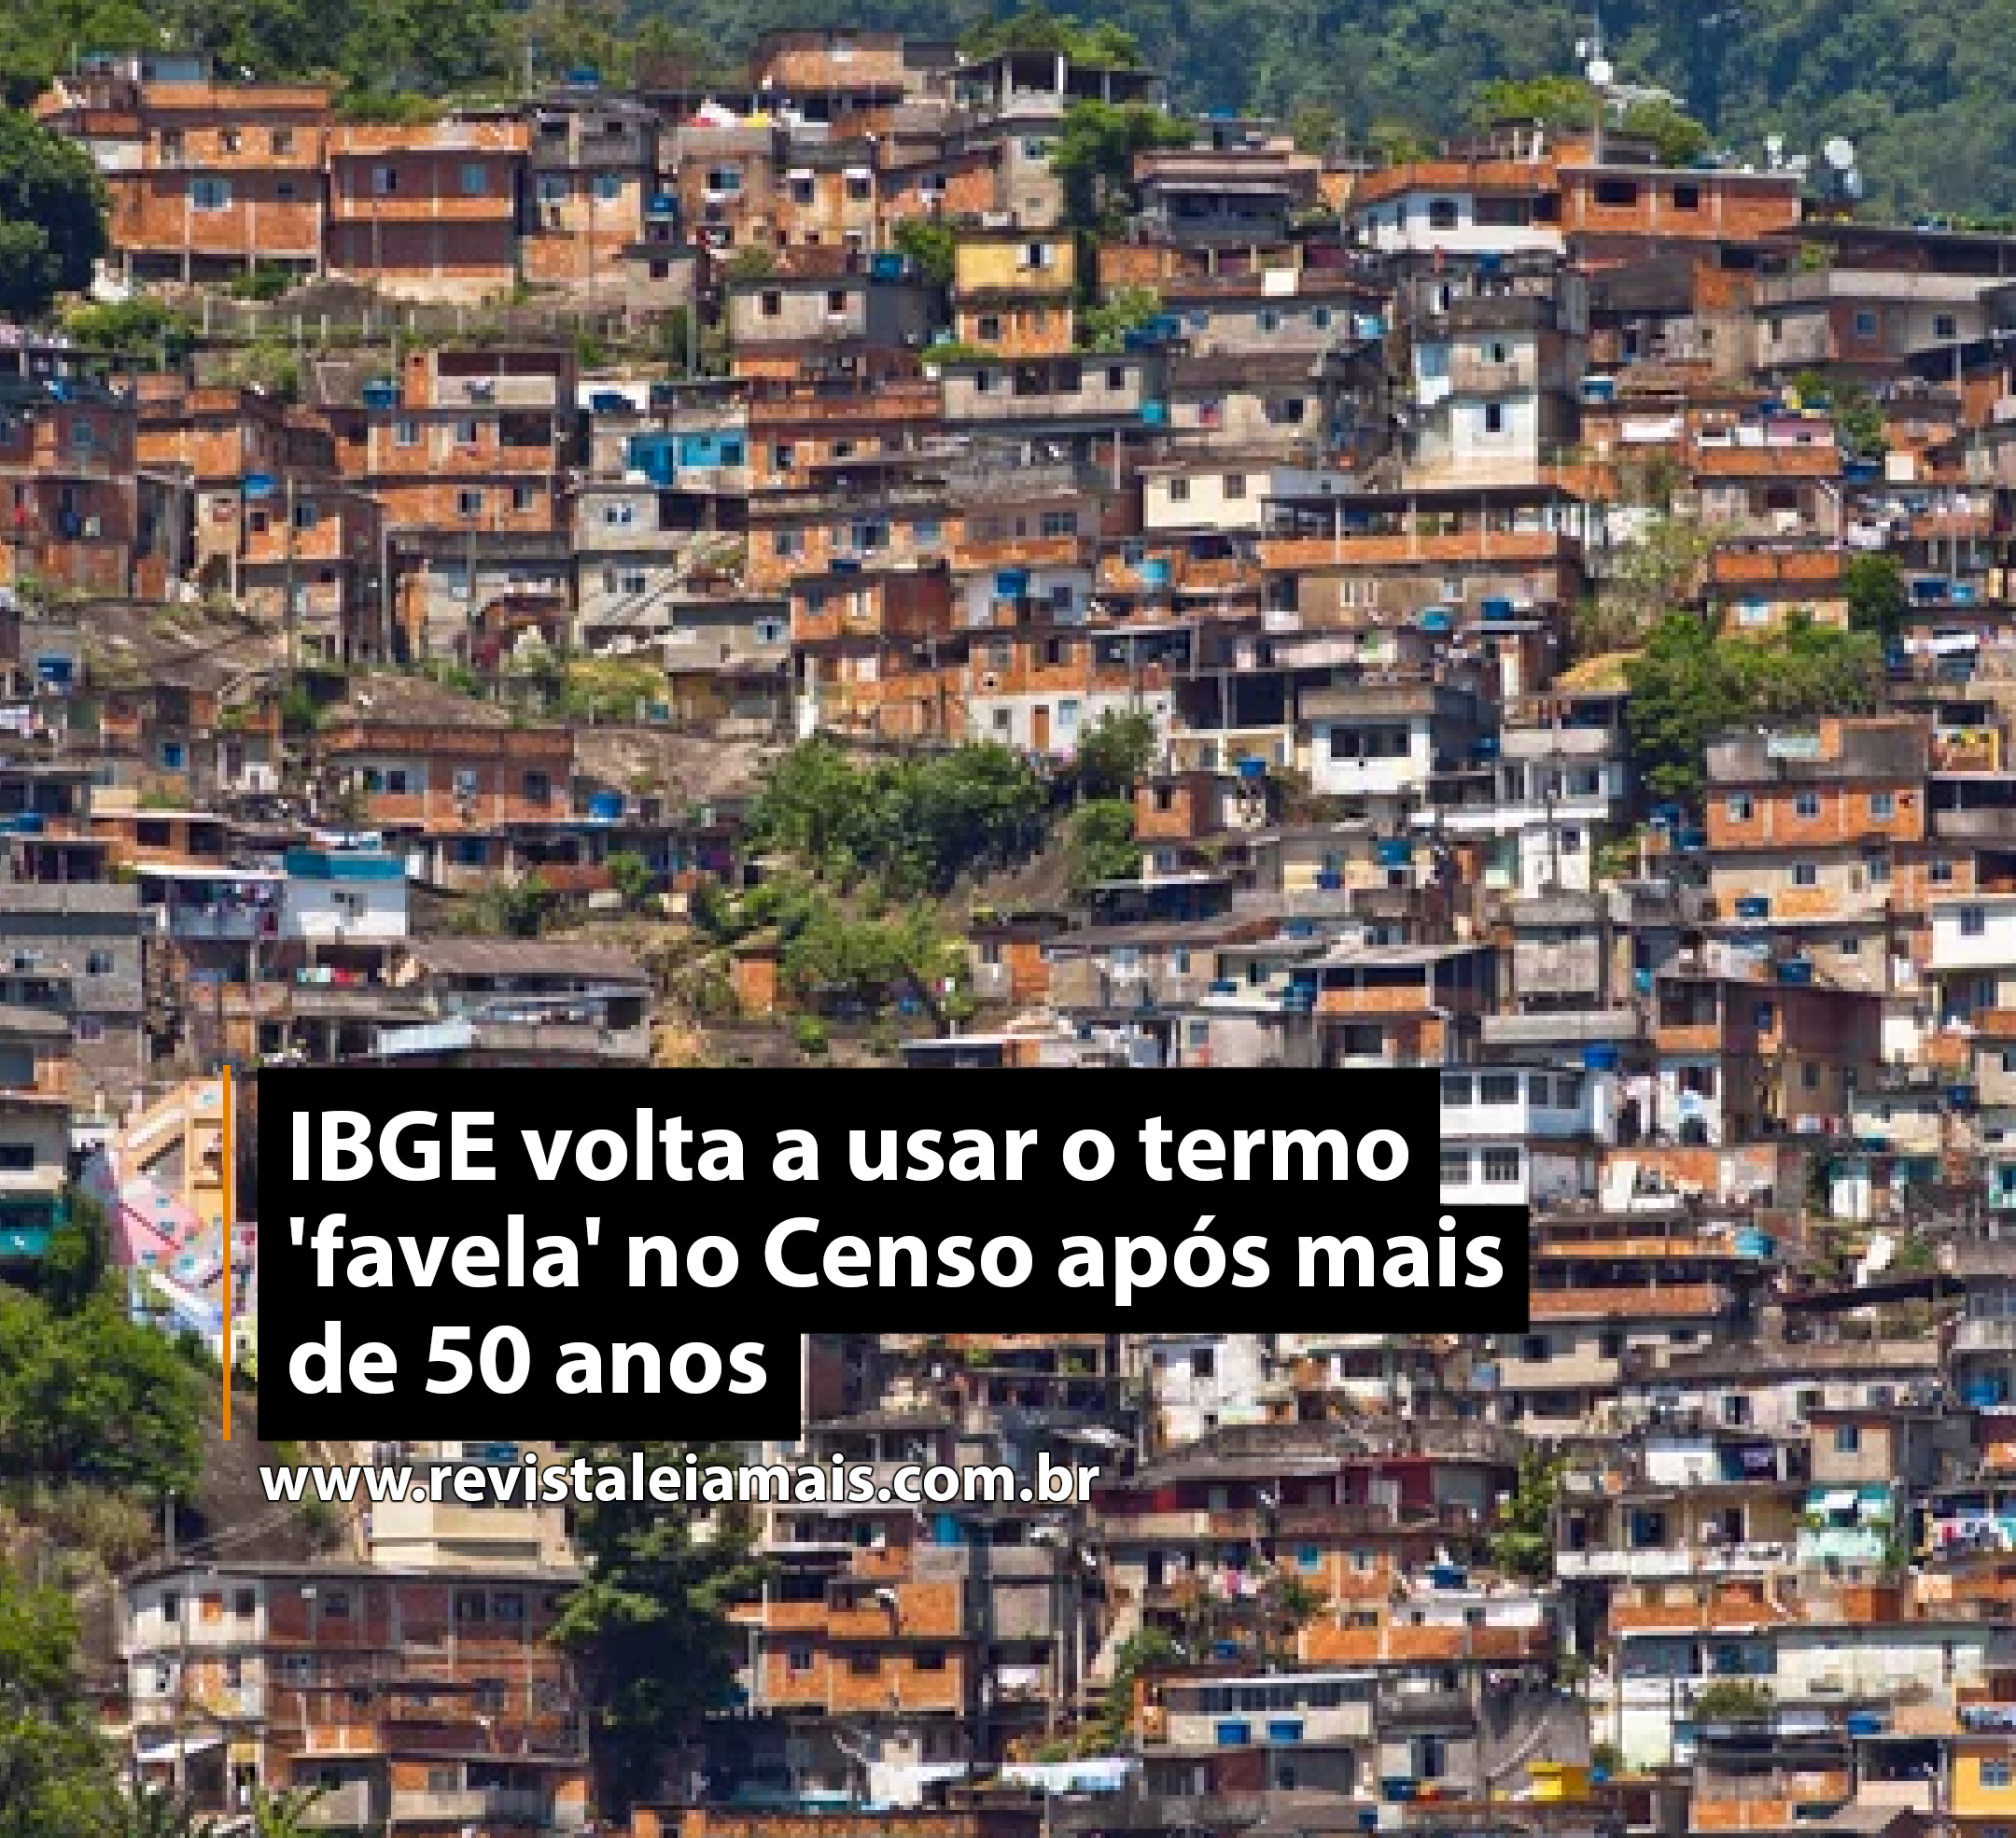 IBGE volta a usar o termo 'favela' no Censo após mais de 50 anos